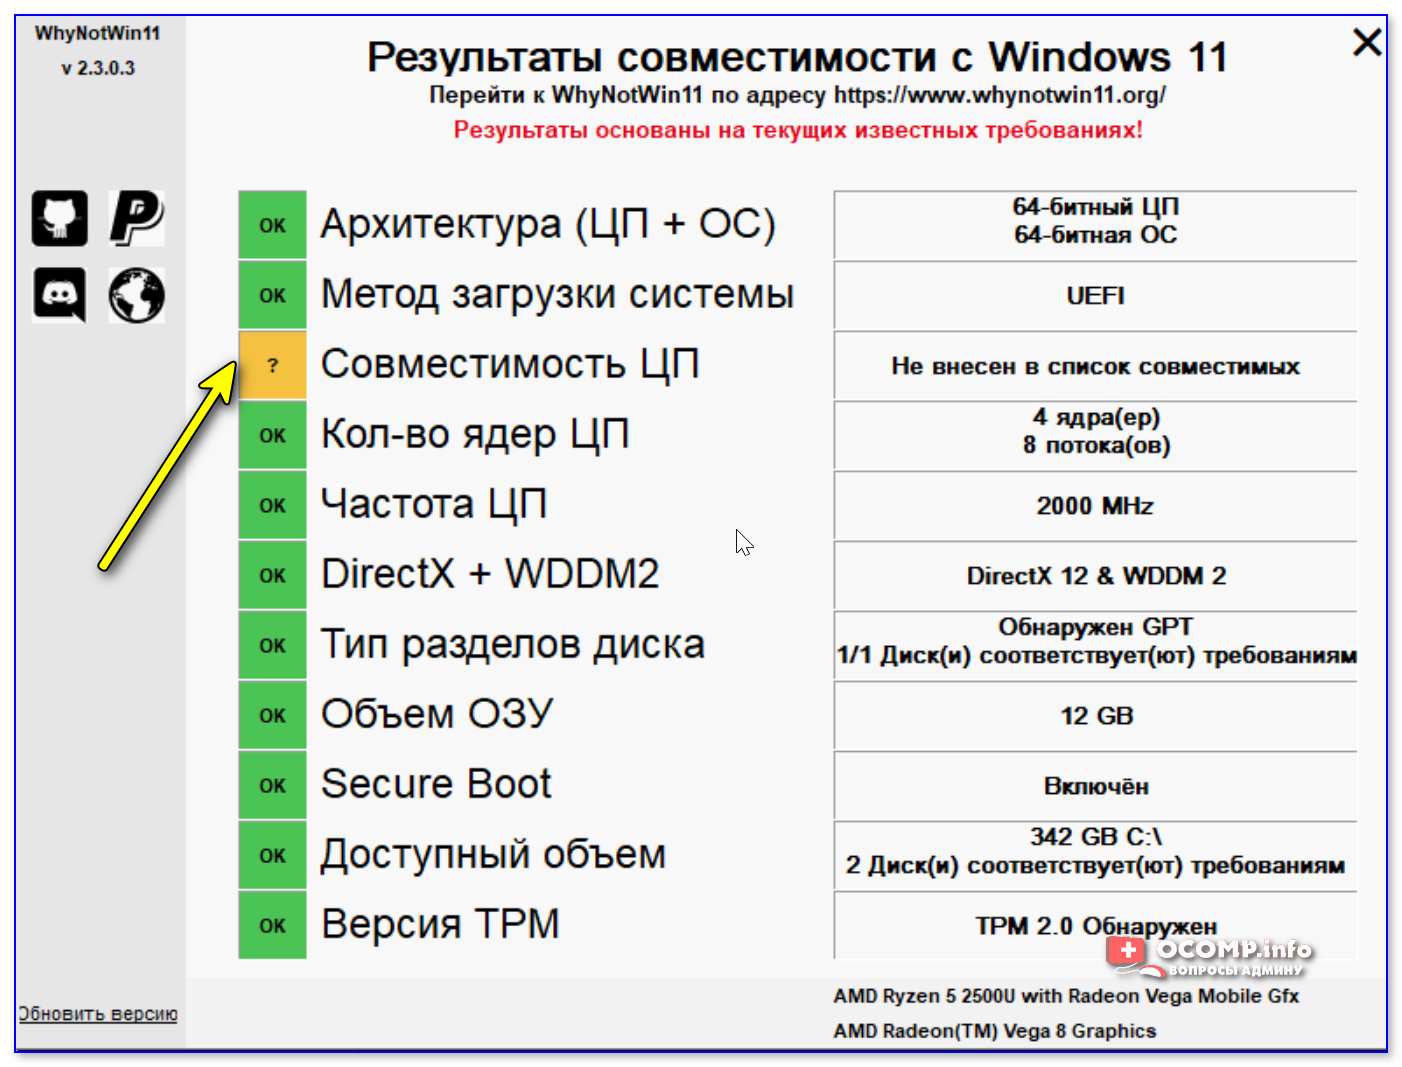 Не внесен в список совместимых - проверка на то, можно ли на ПК установить Windows 11